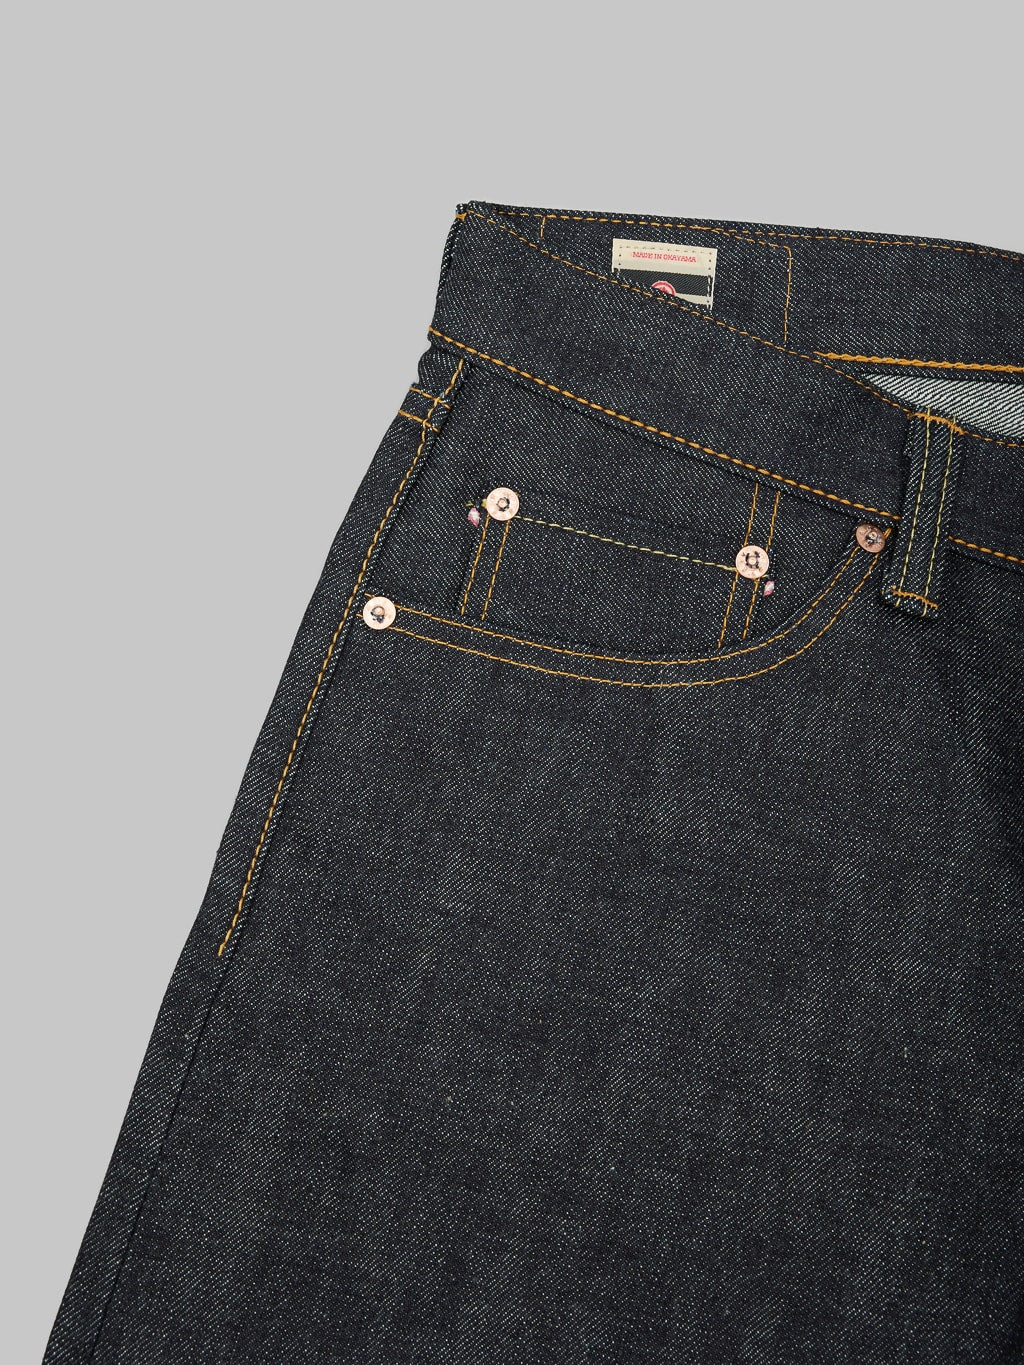 Momotaro 0306 V Tight Tapered Jeans coin pocket